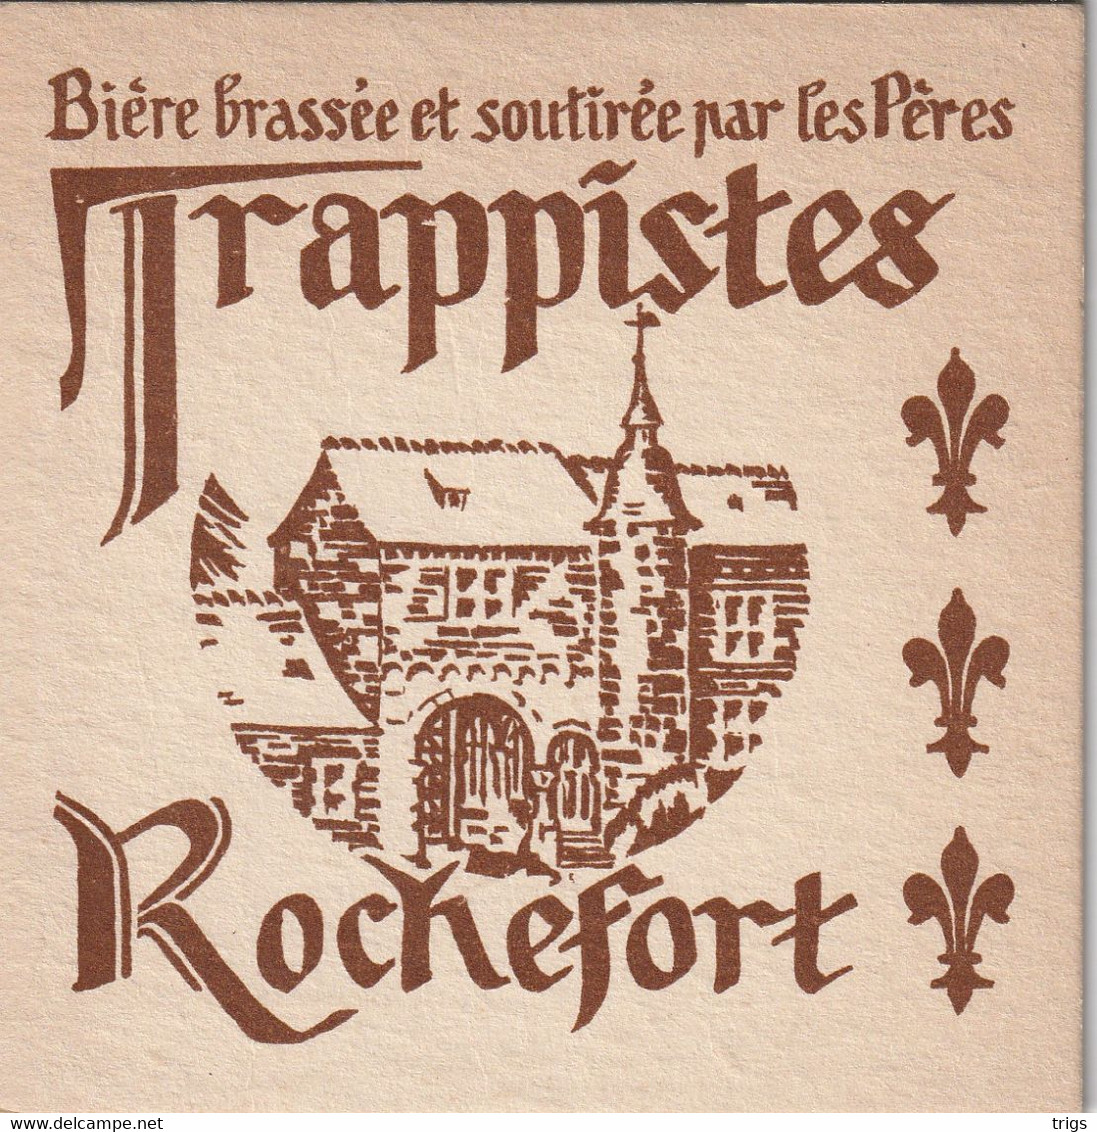 Trappistes Rochefort - Bierviltjes